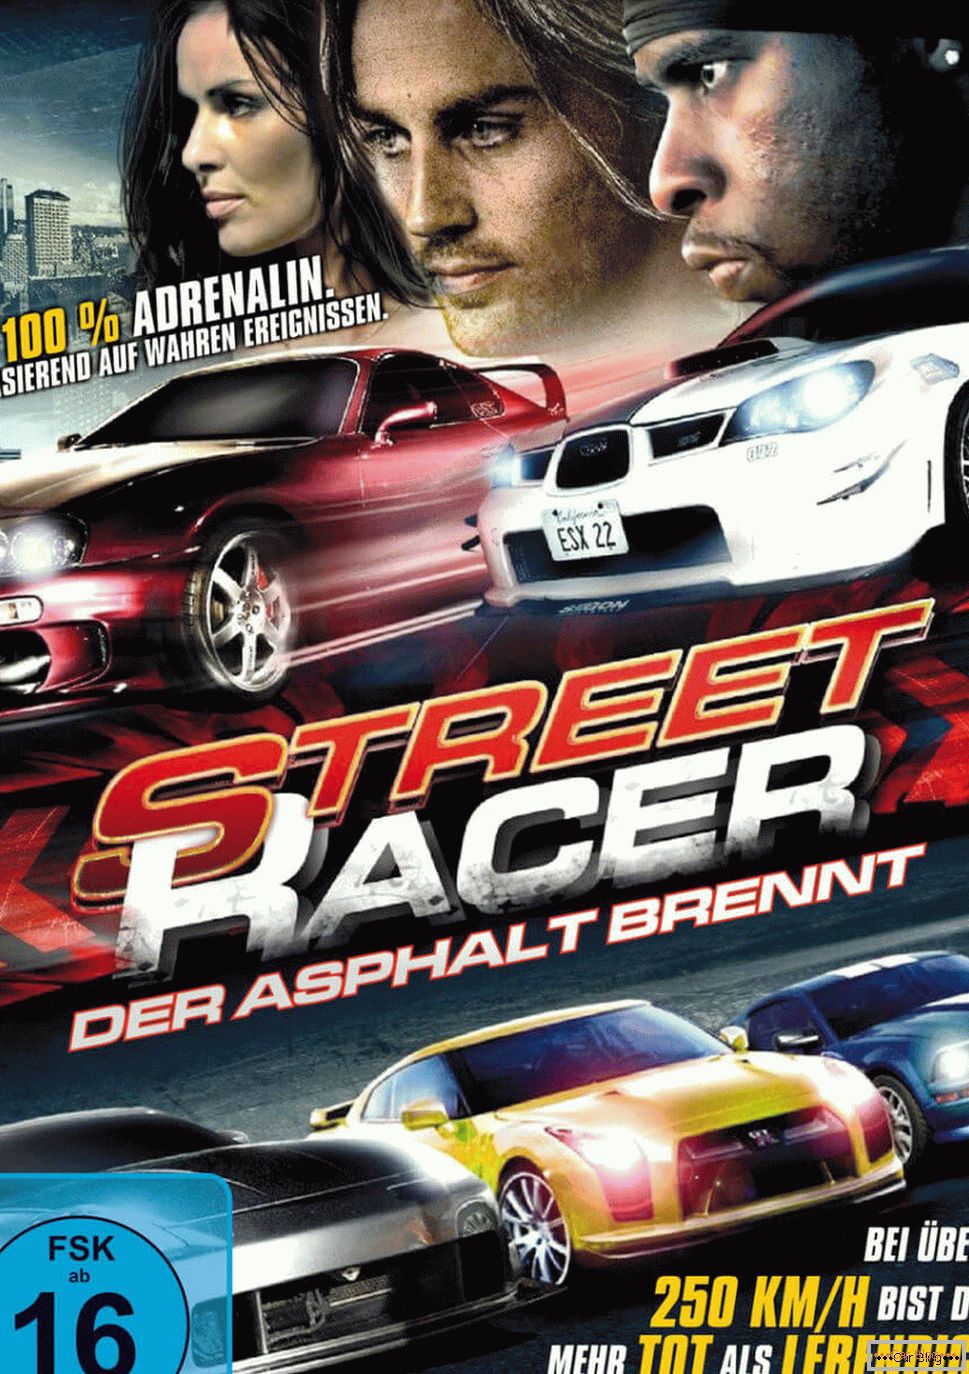 Poster for the film Street racer